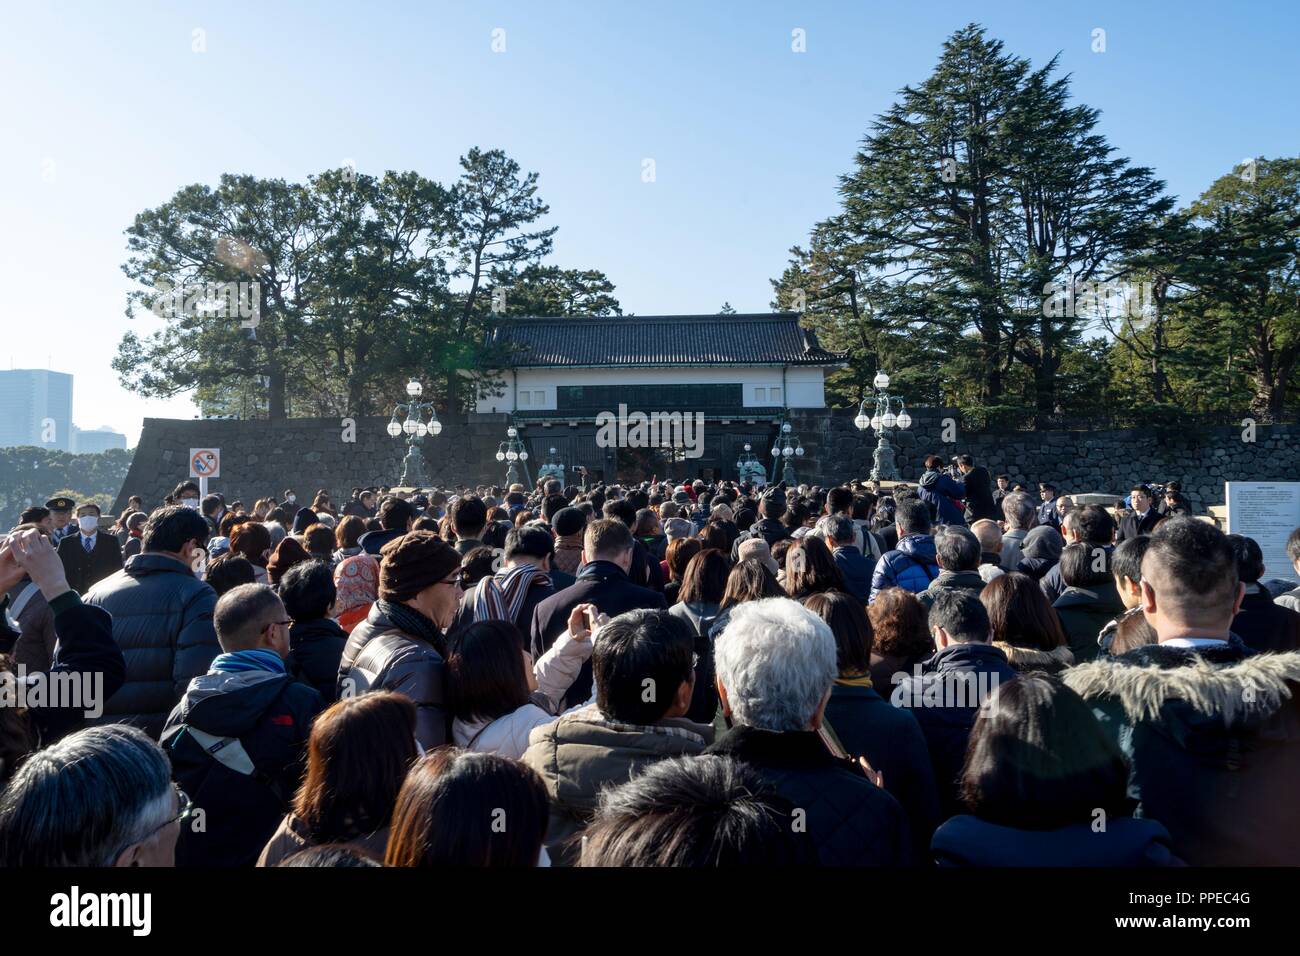 Japan: Massen am Haupteingang der Kaiserpalast von Tokio. Anlässlich der letzten Geburtstag Rede des japanischen Kaisers Akihito. Foto vom 23. Dezember 2017. | Verwendung weltweit Stockfoto